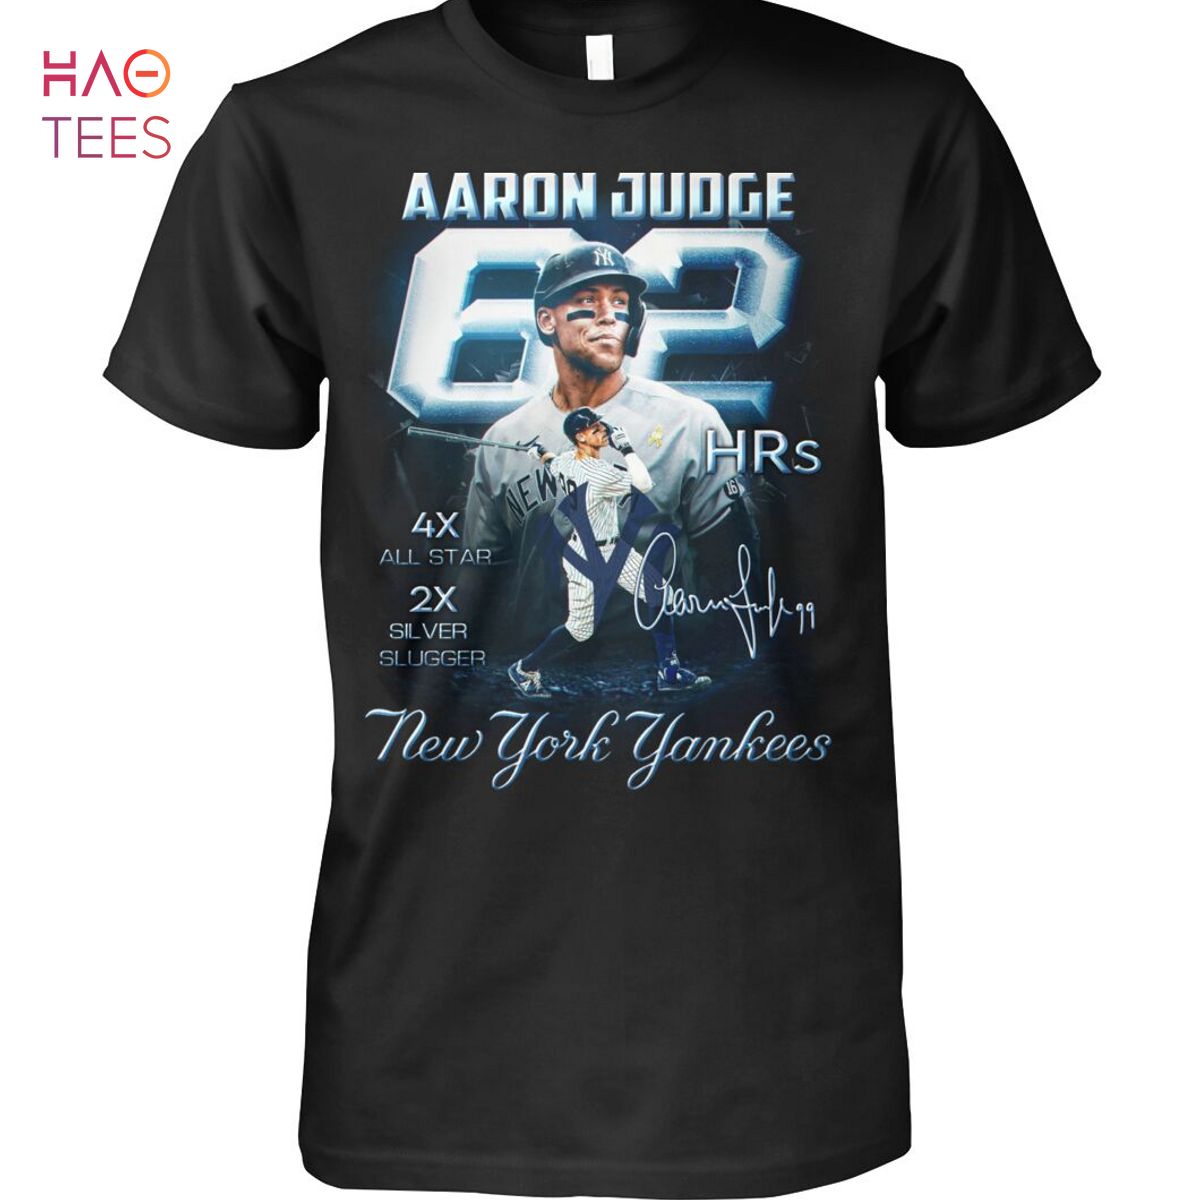 aaron judge player shirt